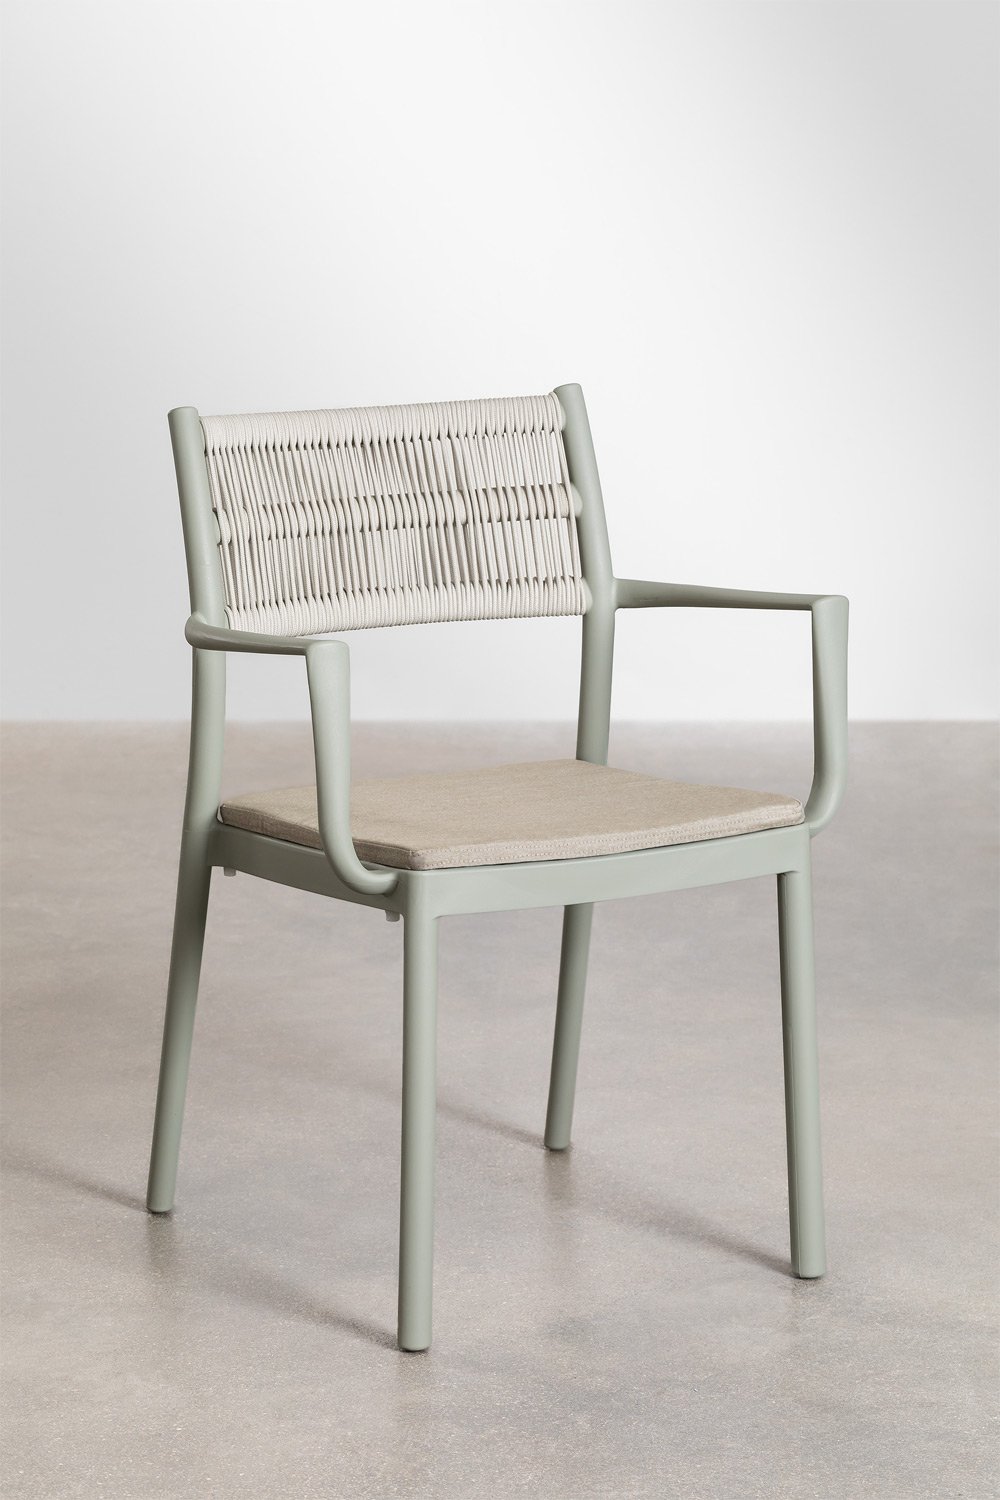 Confezione da 2 sedie da pranzo impilabili con braccioli Favila, immagine della galleria 1